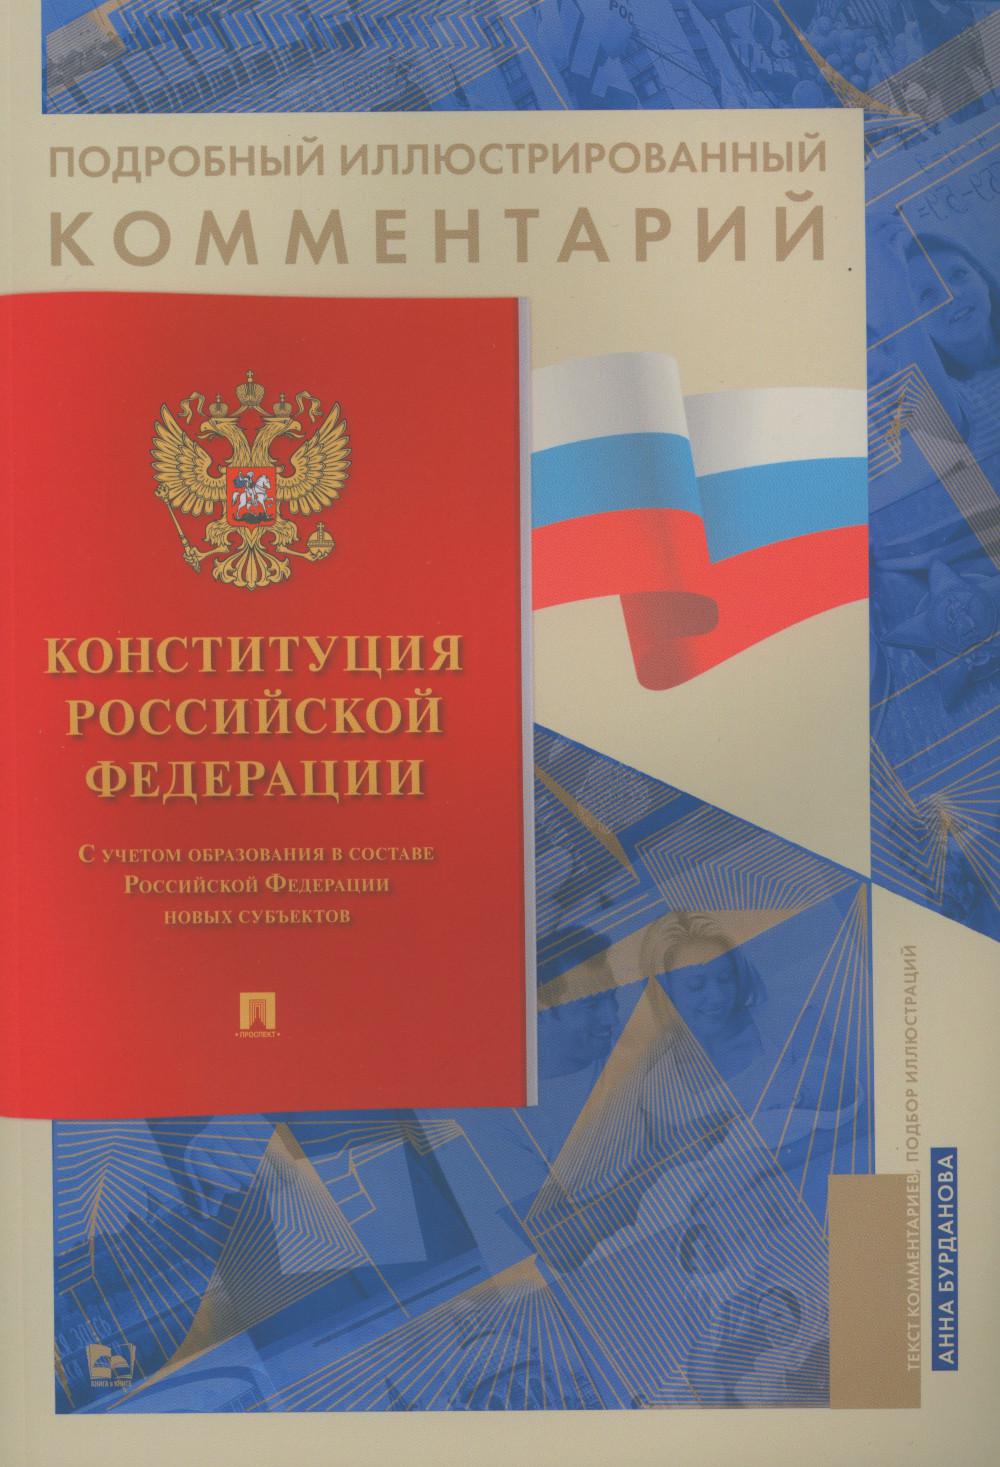 Подробный иллюстрированный комментарий к Конституции РФ. (Книга в книге)